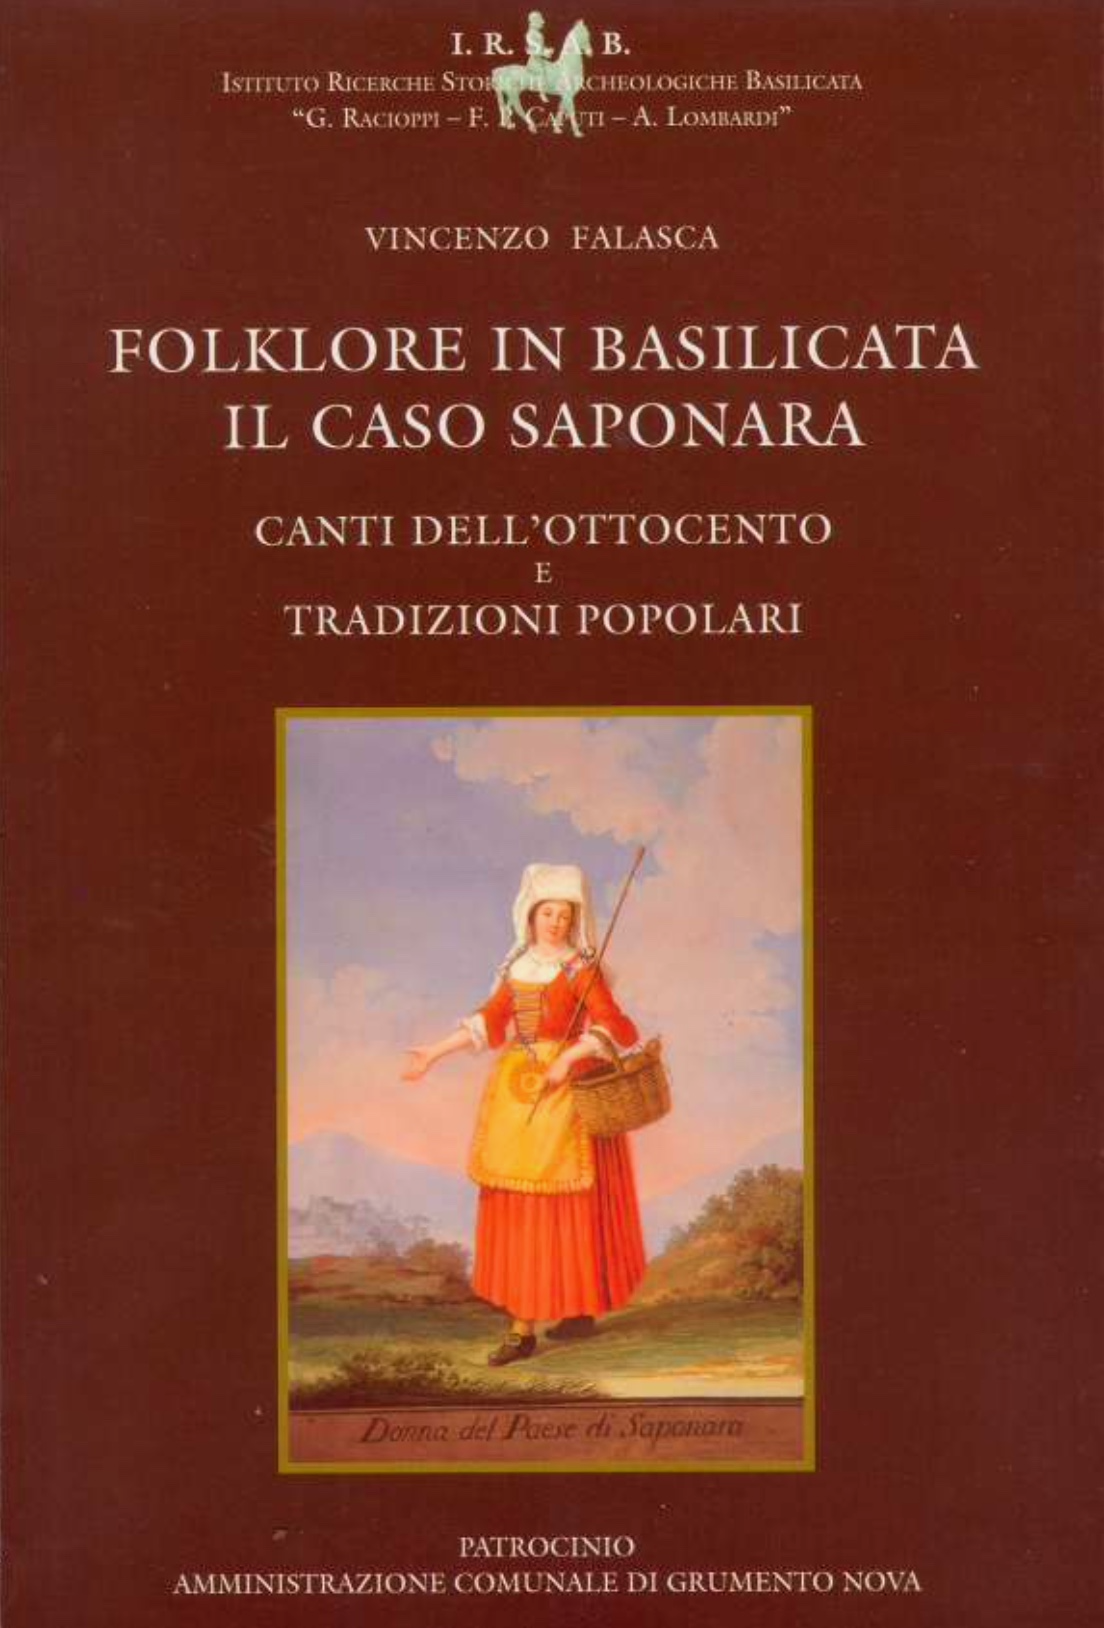 Folklore in Basilicata: Il caso Saponara